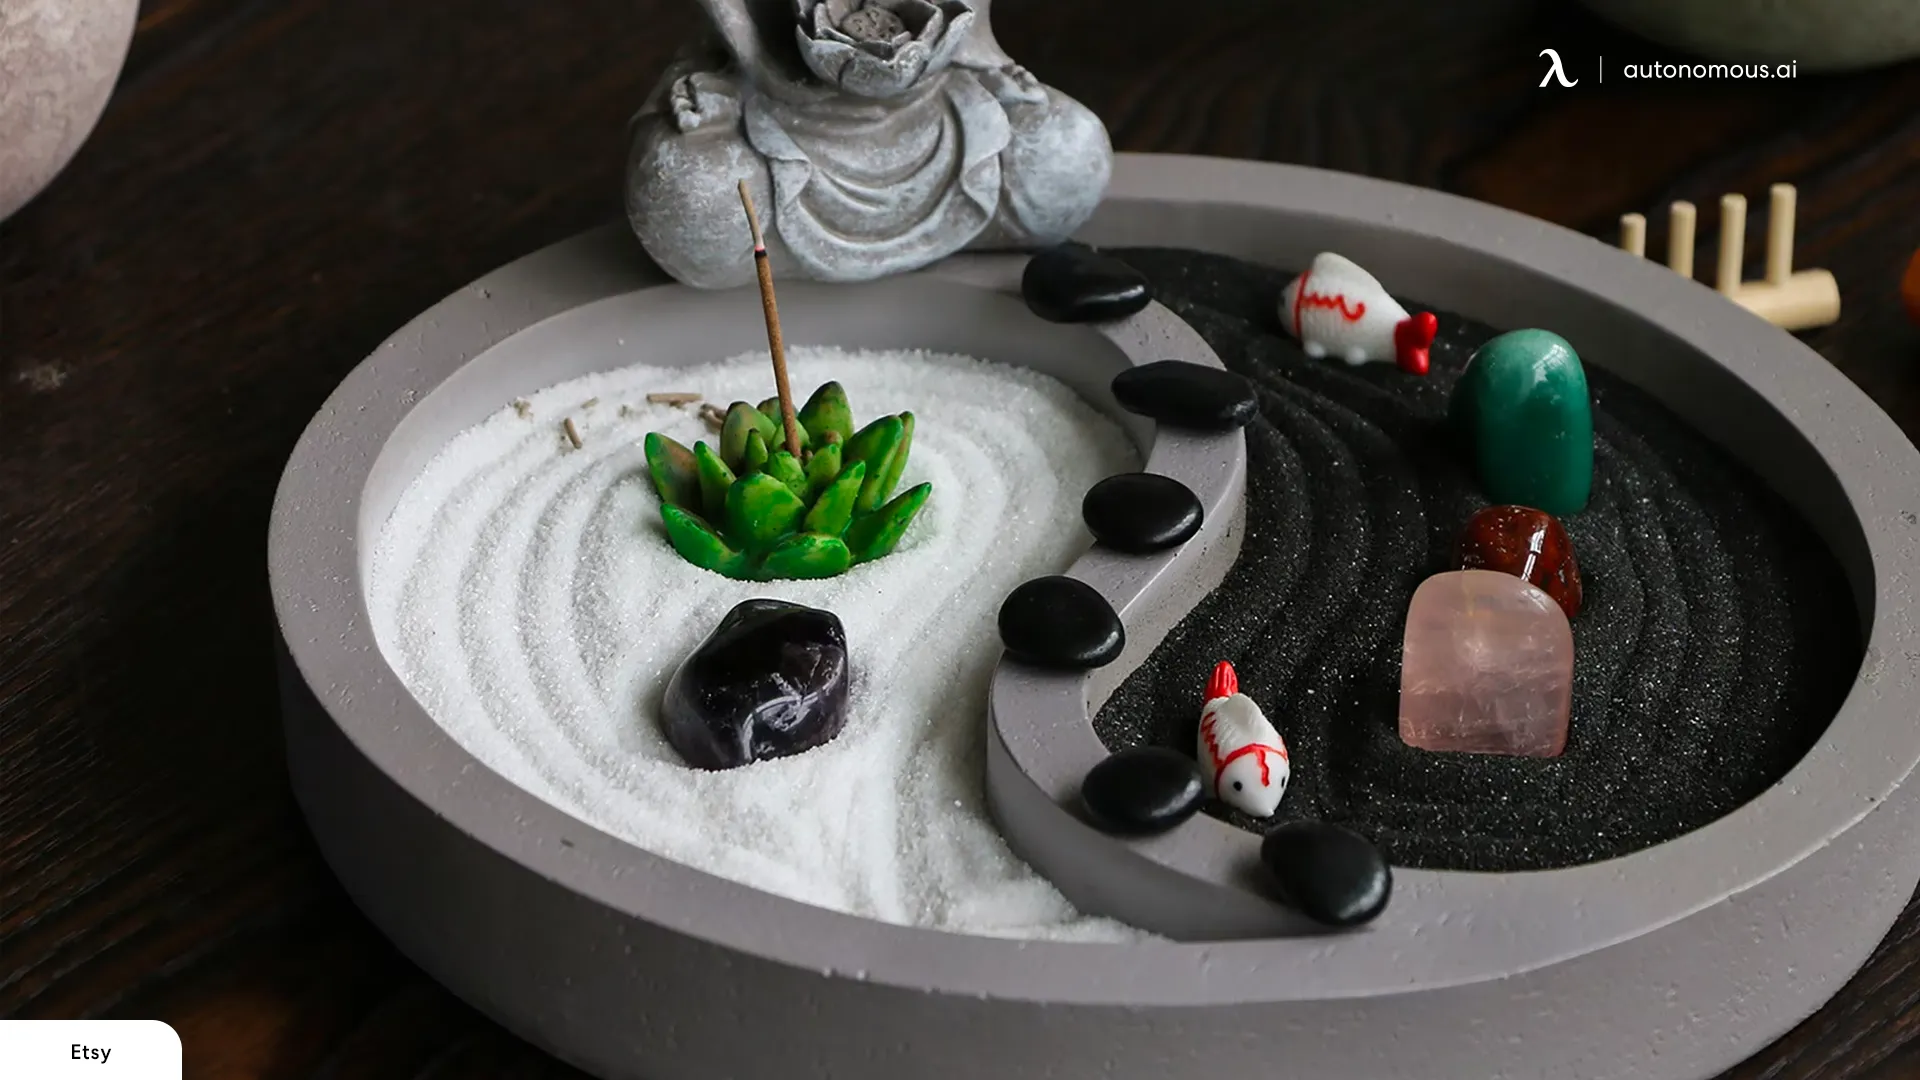 Zen garden with crystals